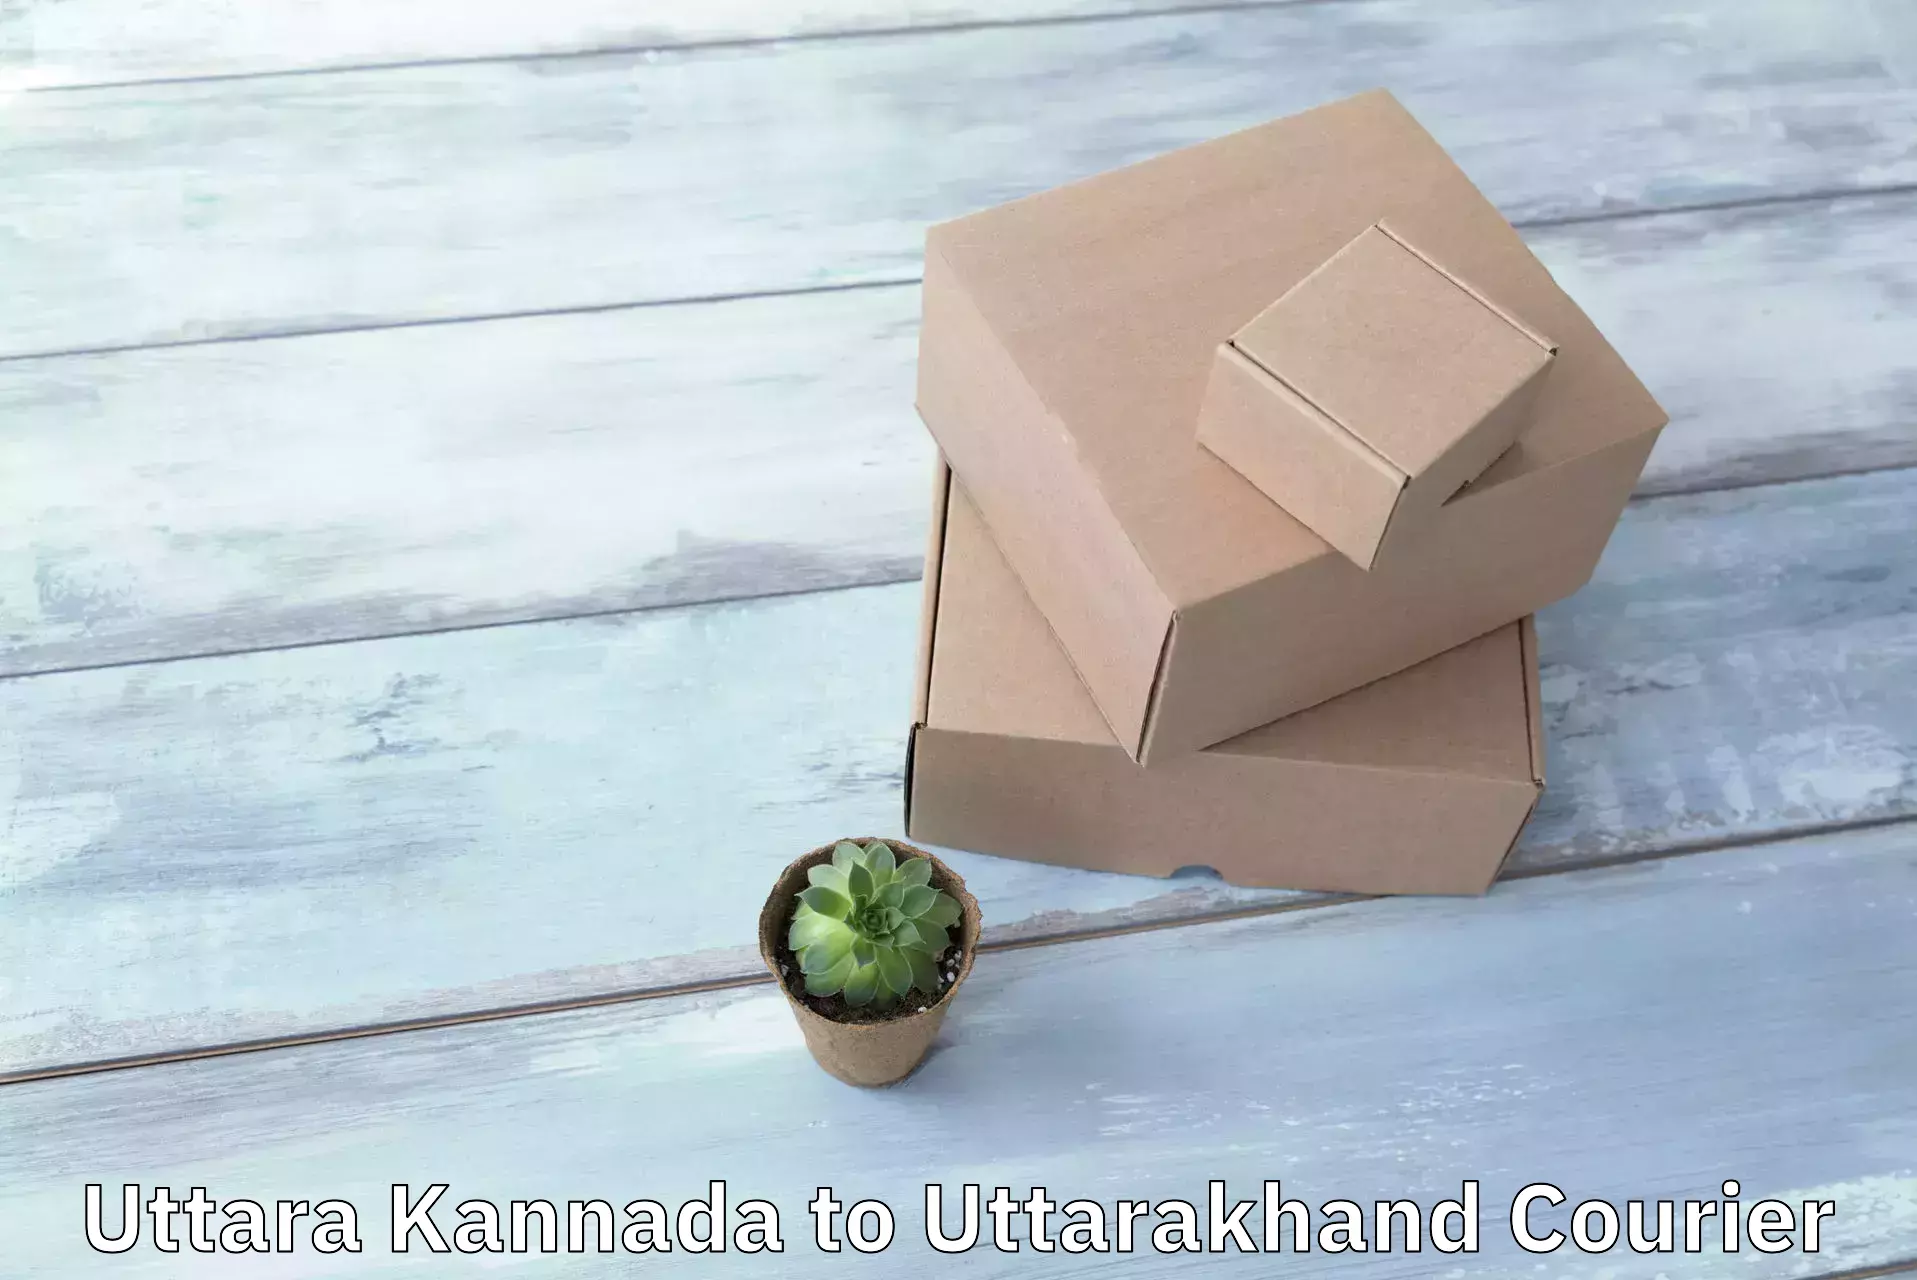 Sustainable shipping practices Uttara Kannada to Kotdwara